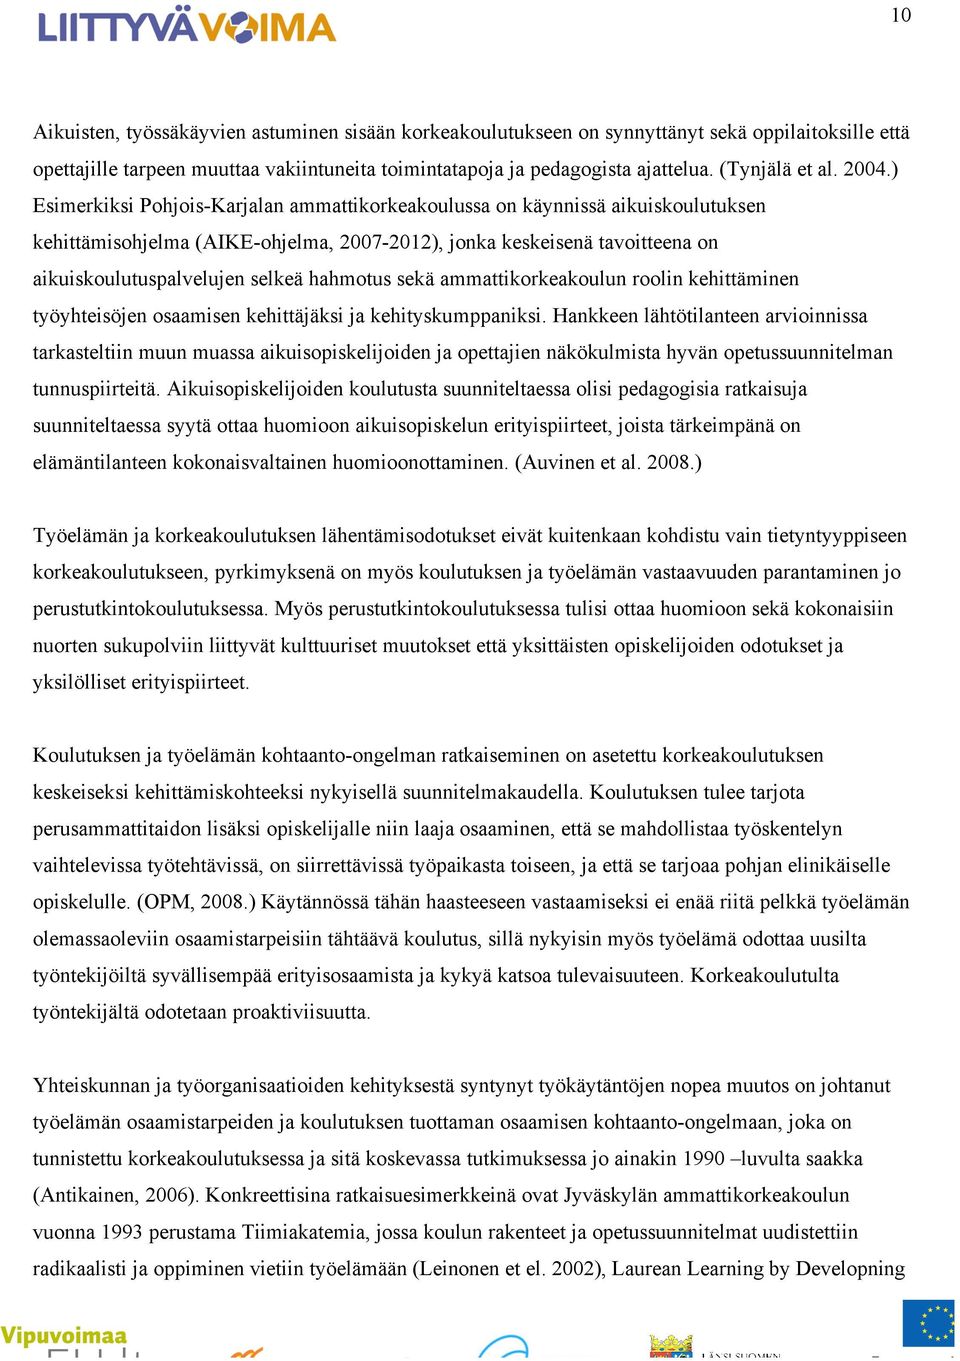 ) Esimerkiksi Pohjois-Karjalan ammattikorkeakoulussa on käynnissä aikuiskoulutuksen kehittämisohjelma (AIKE-ohjelma, 2007-2012), jonka keskeisenä tavoitteena on aikuiskoulutuspalvelujen selkeä